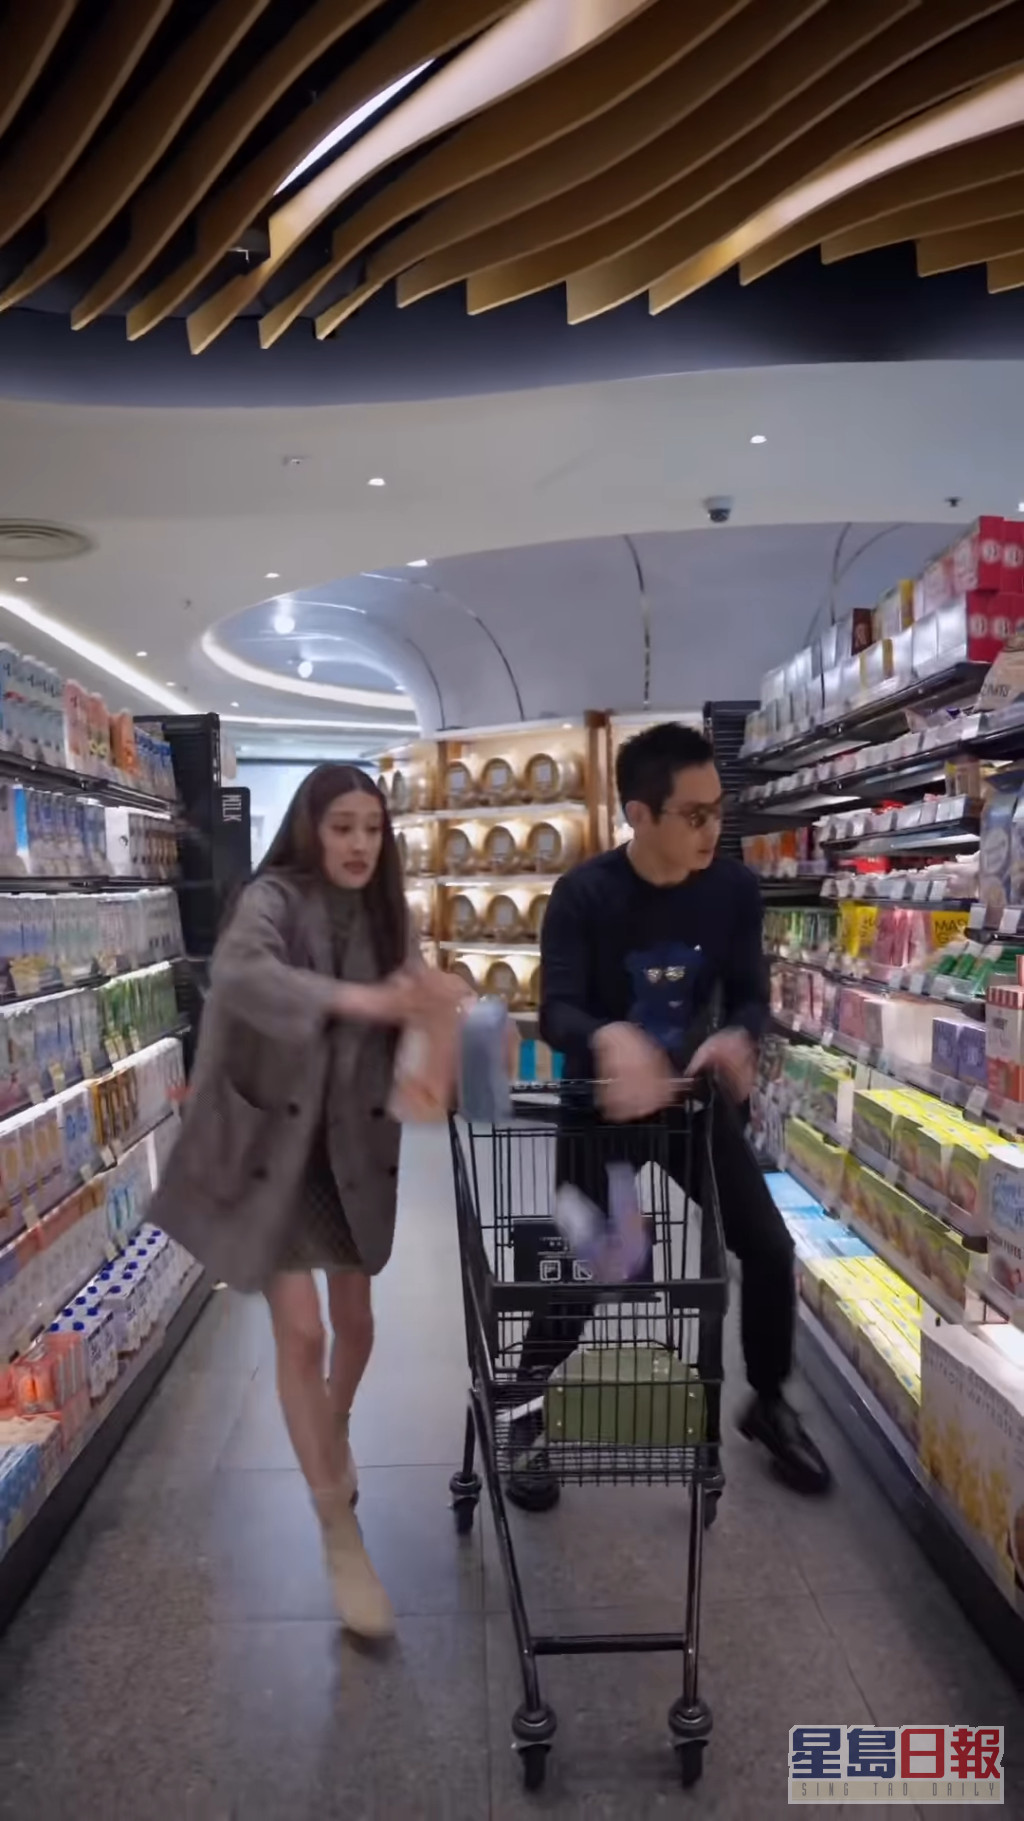 短片后段的产后生活，陈凯琳与郑嘉颖去到超市即极速狂扫果汁、零食等食物用品给小朋友。